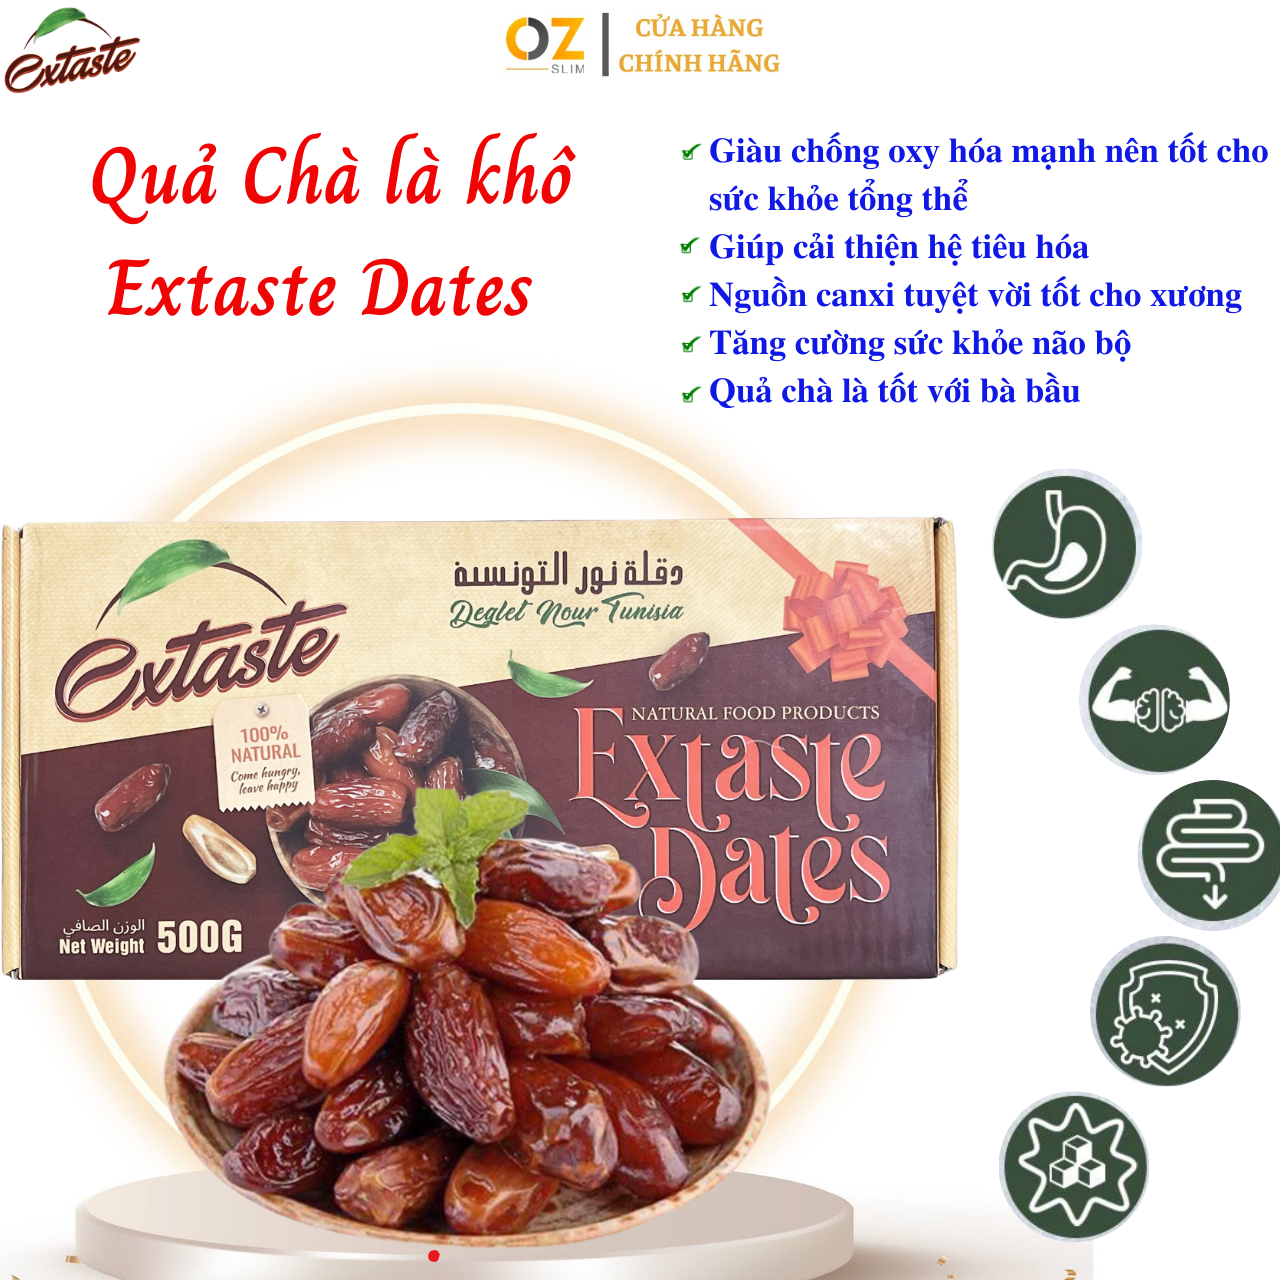 Chà là khô Extaste Dates Deglet Nour Tunisia chín tự nhiên, ngọt tự nhiên, mềm, dẻo mịn (500g/Hộp) - OZ Slim Store